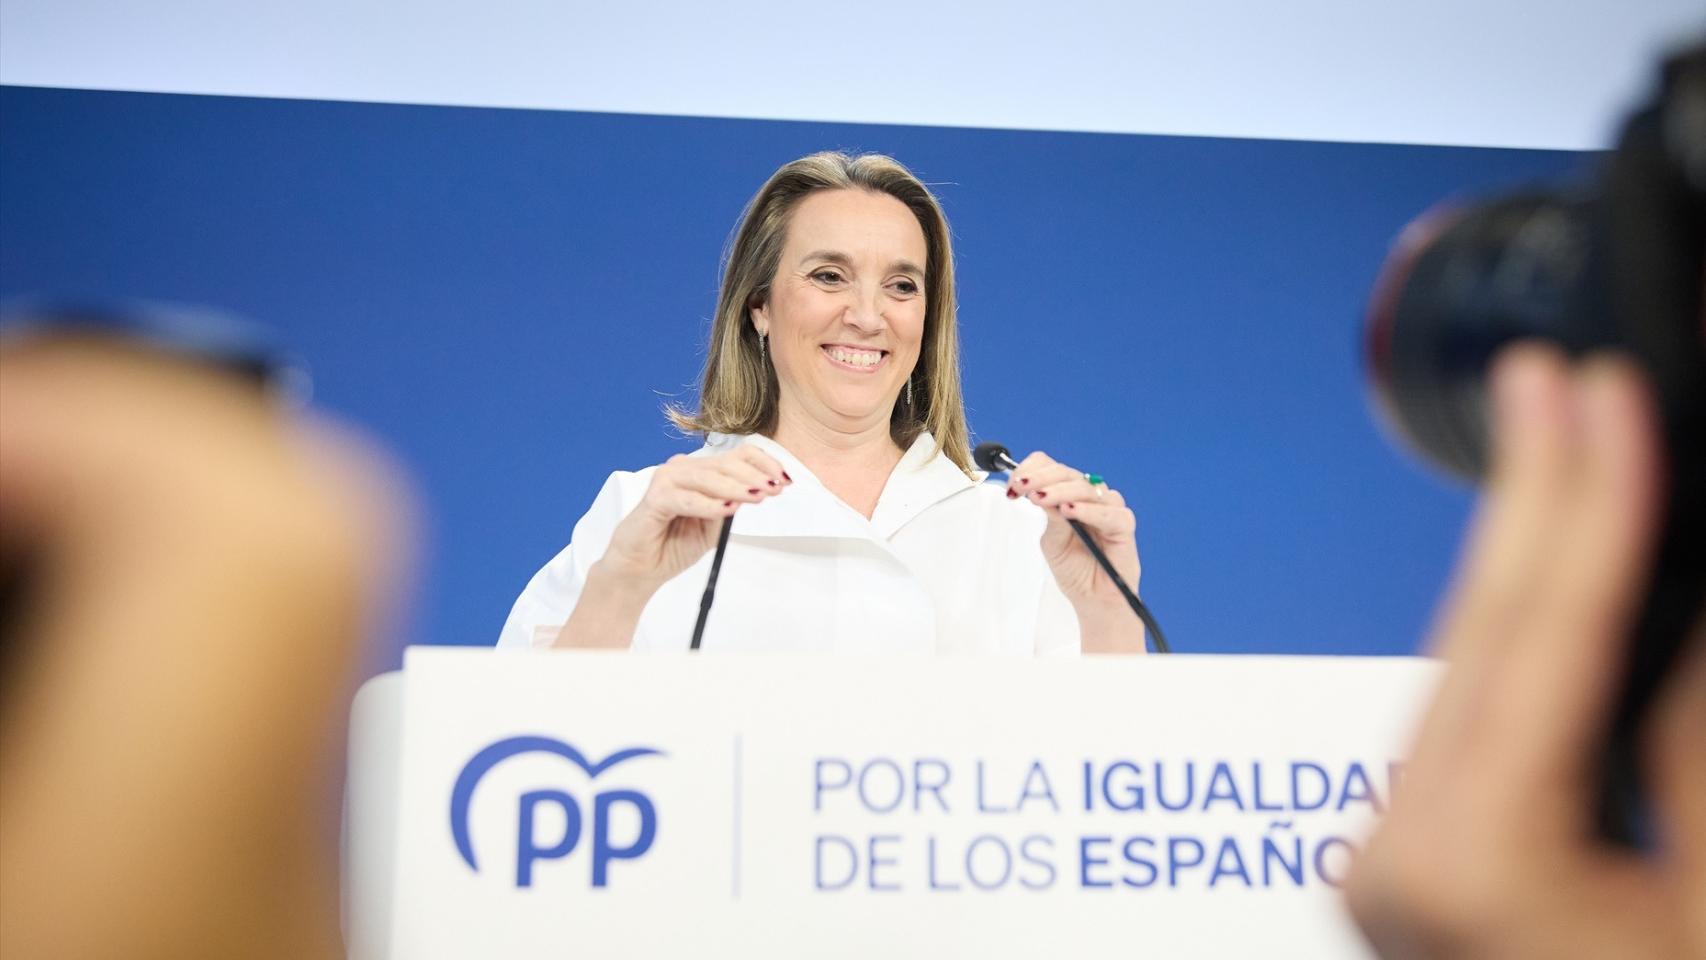 La secretaria general del Partido Popular, Cuca Gamarra, comparece durante el seguimiento de la jornada electoral de los comicios autonómicos de Galicia.